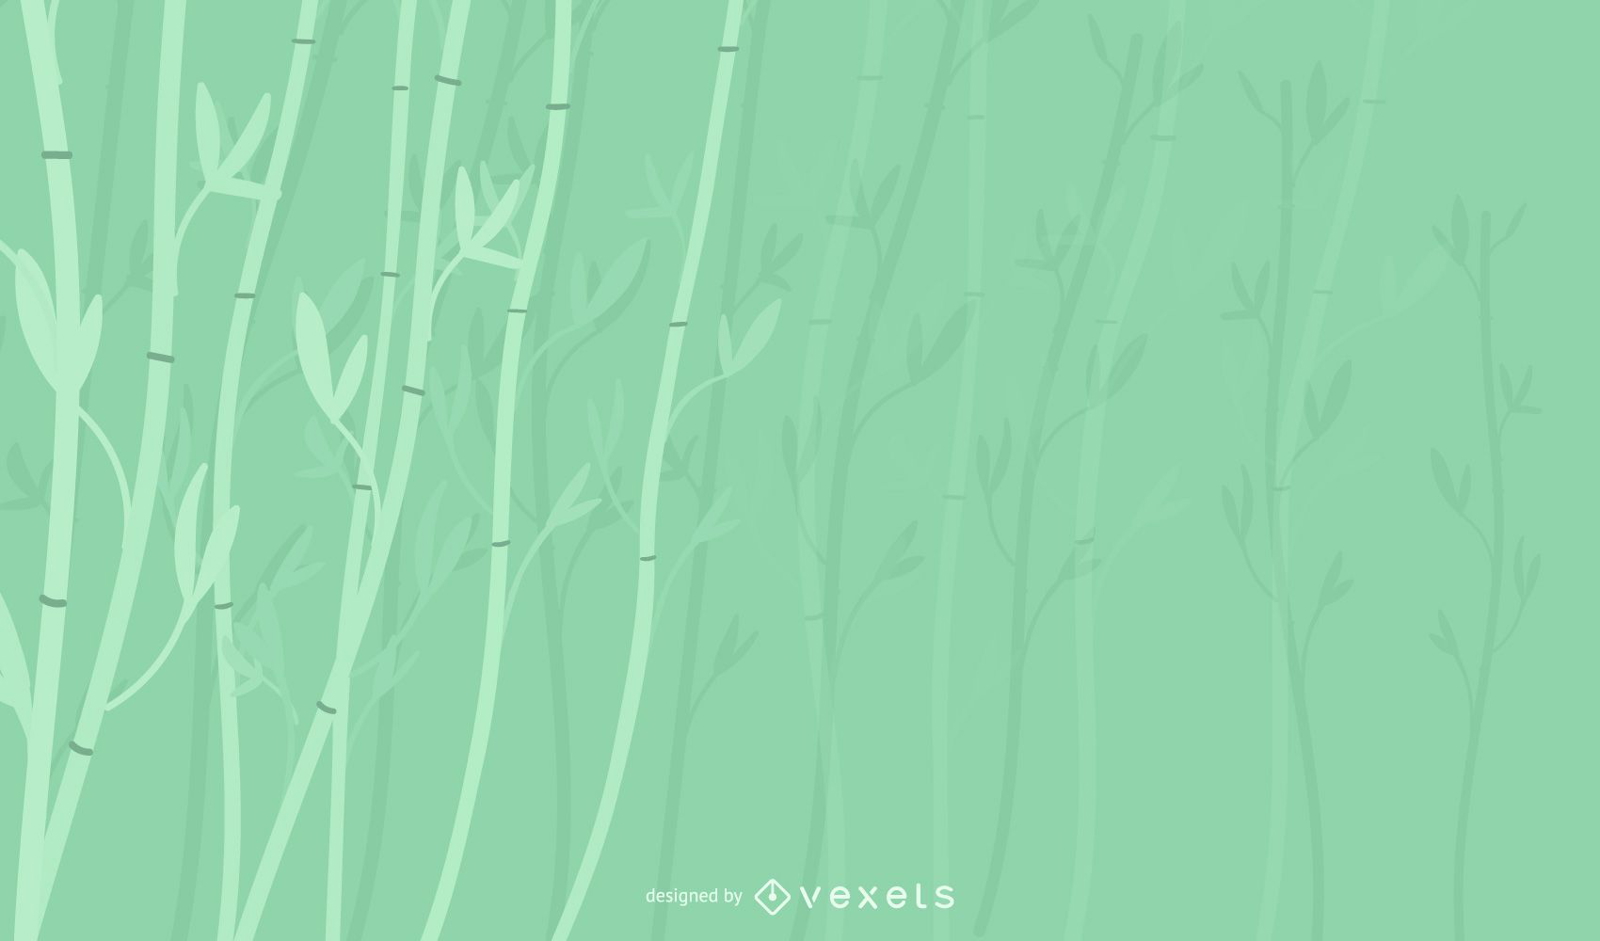 Hintergrunddesign der Bambuspflanze